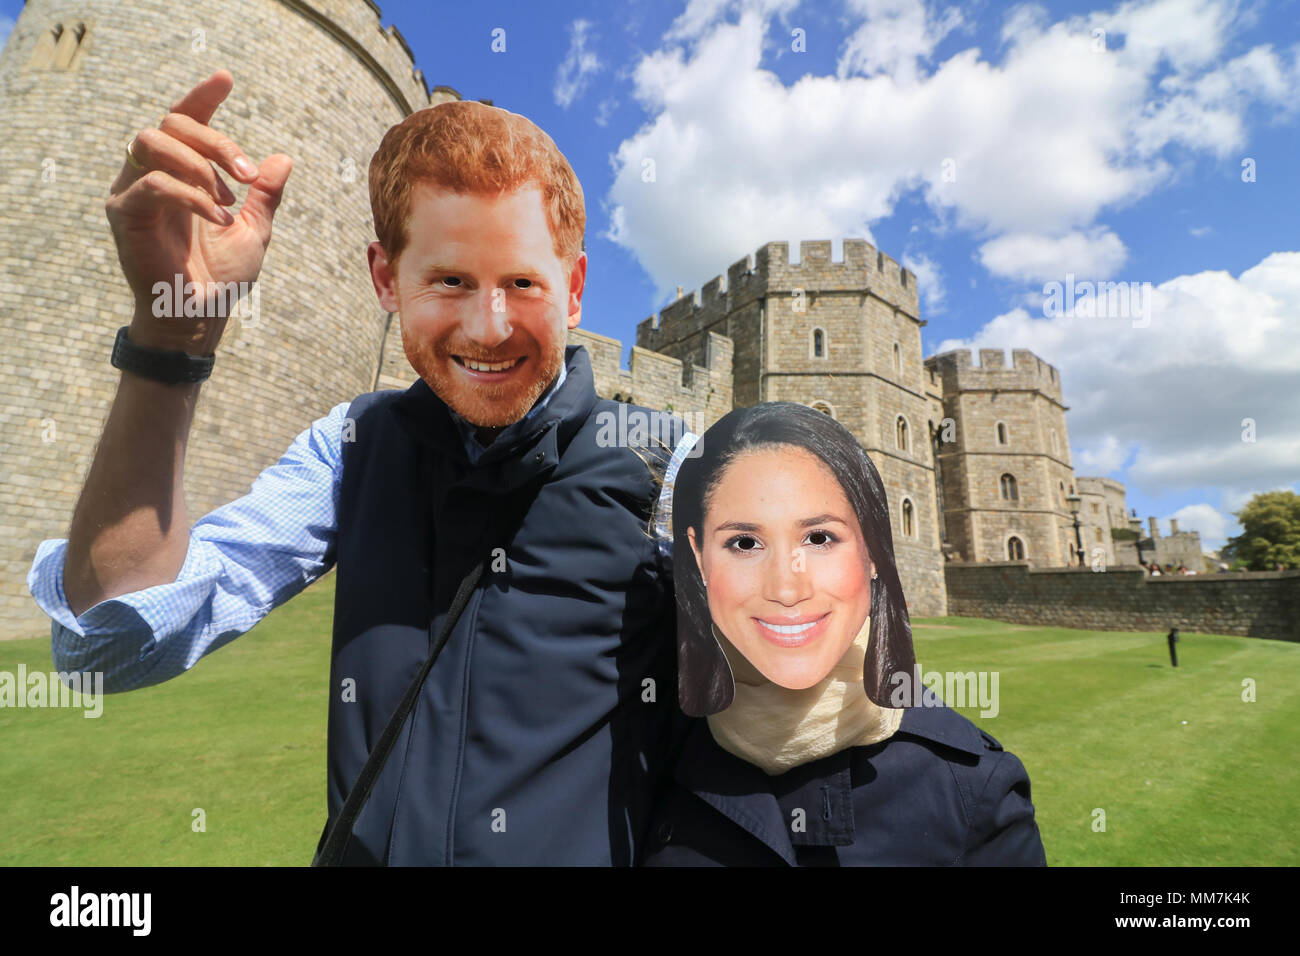 Windsor, Berkshire UK. 10 mai 2018. Le Prince Harry et les touristes portant des masques Meghan Markle posent devant le château de Windsor avec un peu plus d'une semaine jusqu'à la chapelle de mariage Windsor le 19 mai 2018 Crédit : amer ghazzal/Alamy Live News Banque D'Images